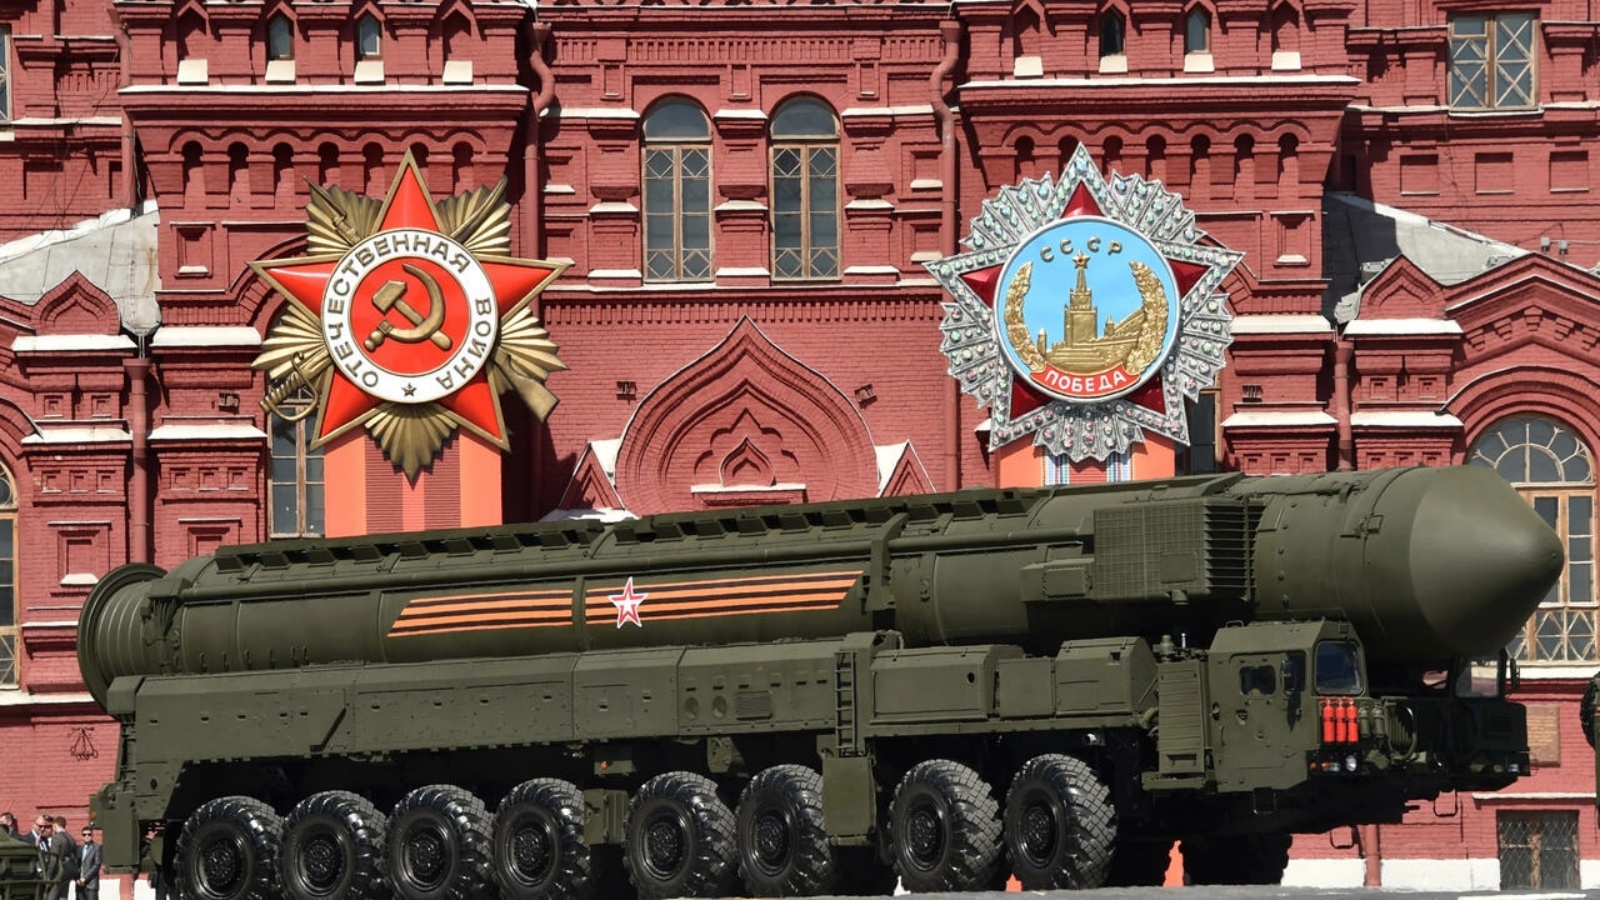 منظومة صواريخ بالستية روسية عابرة للقارات طراز يارس آر إس 24 تشارك في تمارين استعدادا لعرض عسكري في الساحة الحمراء بموسكو في 7 مايو 2015